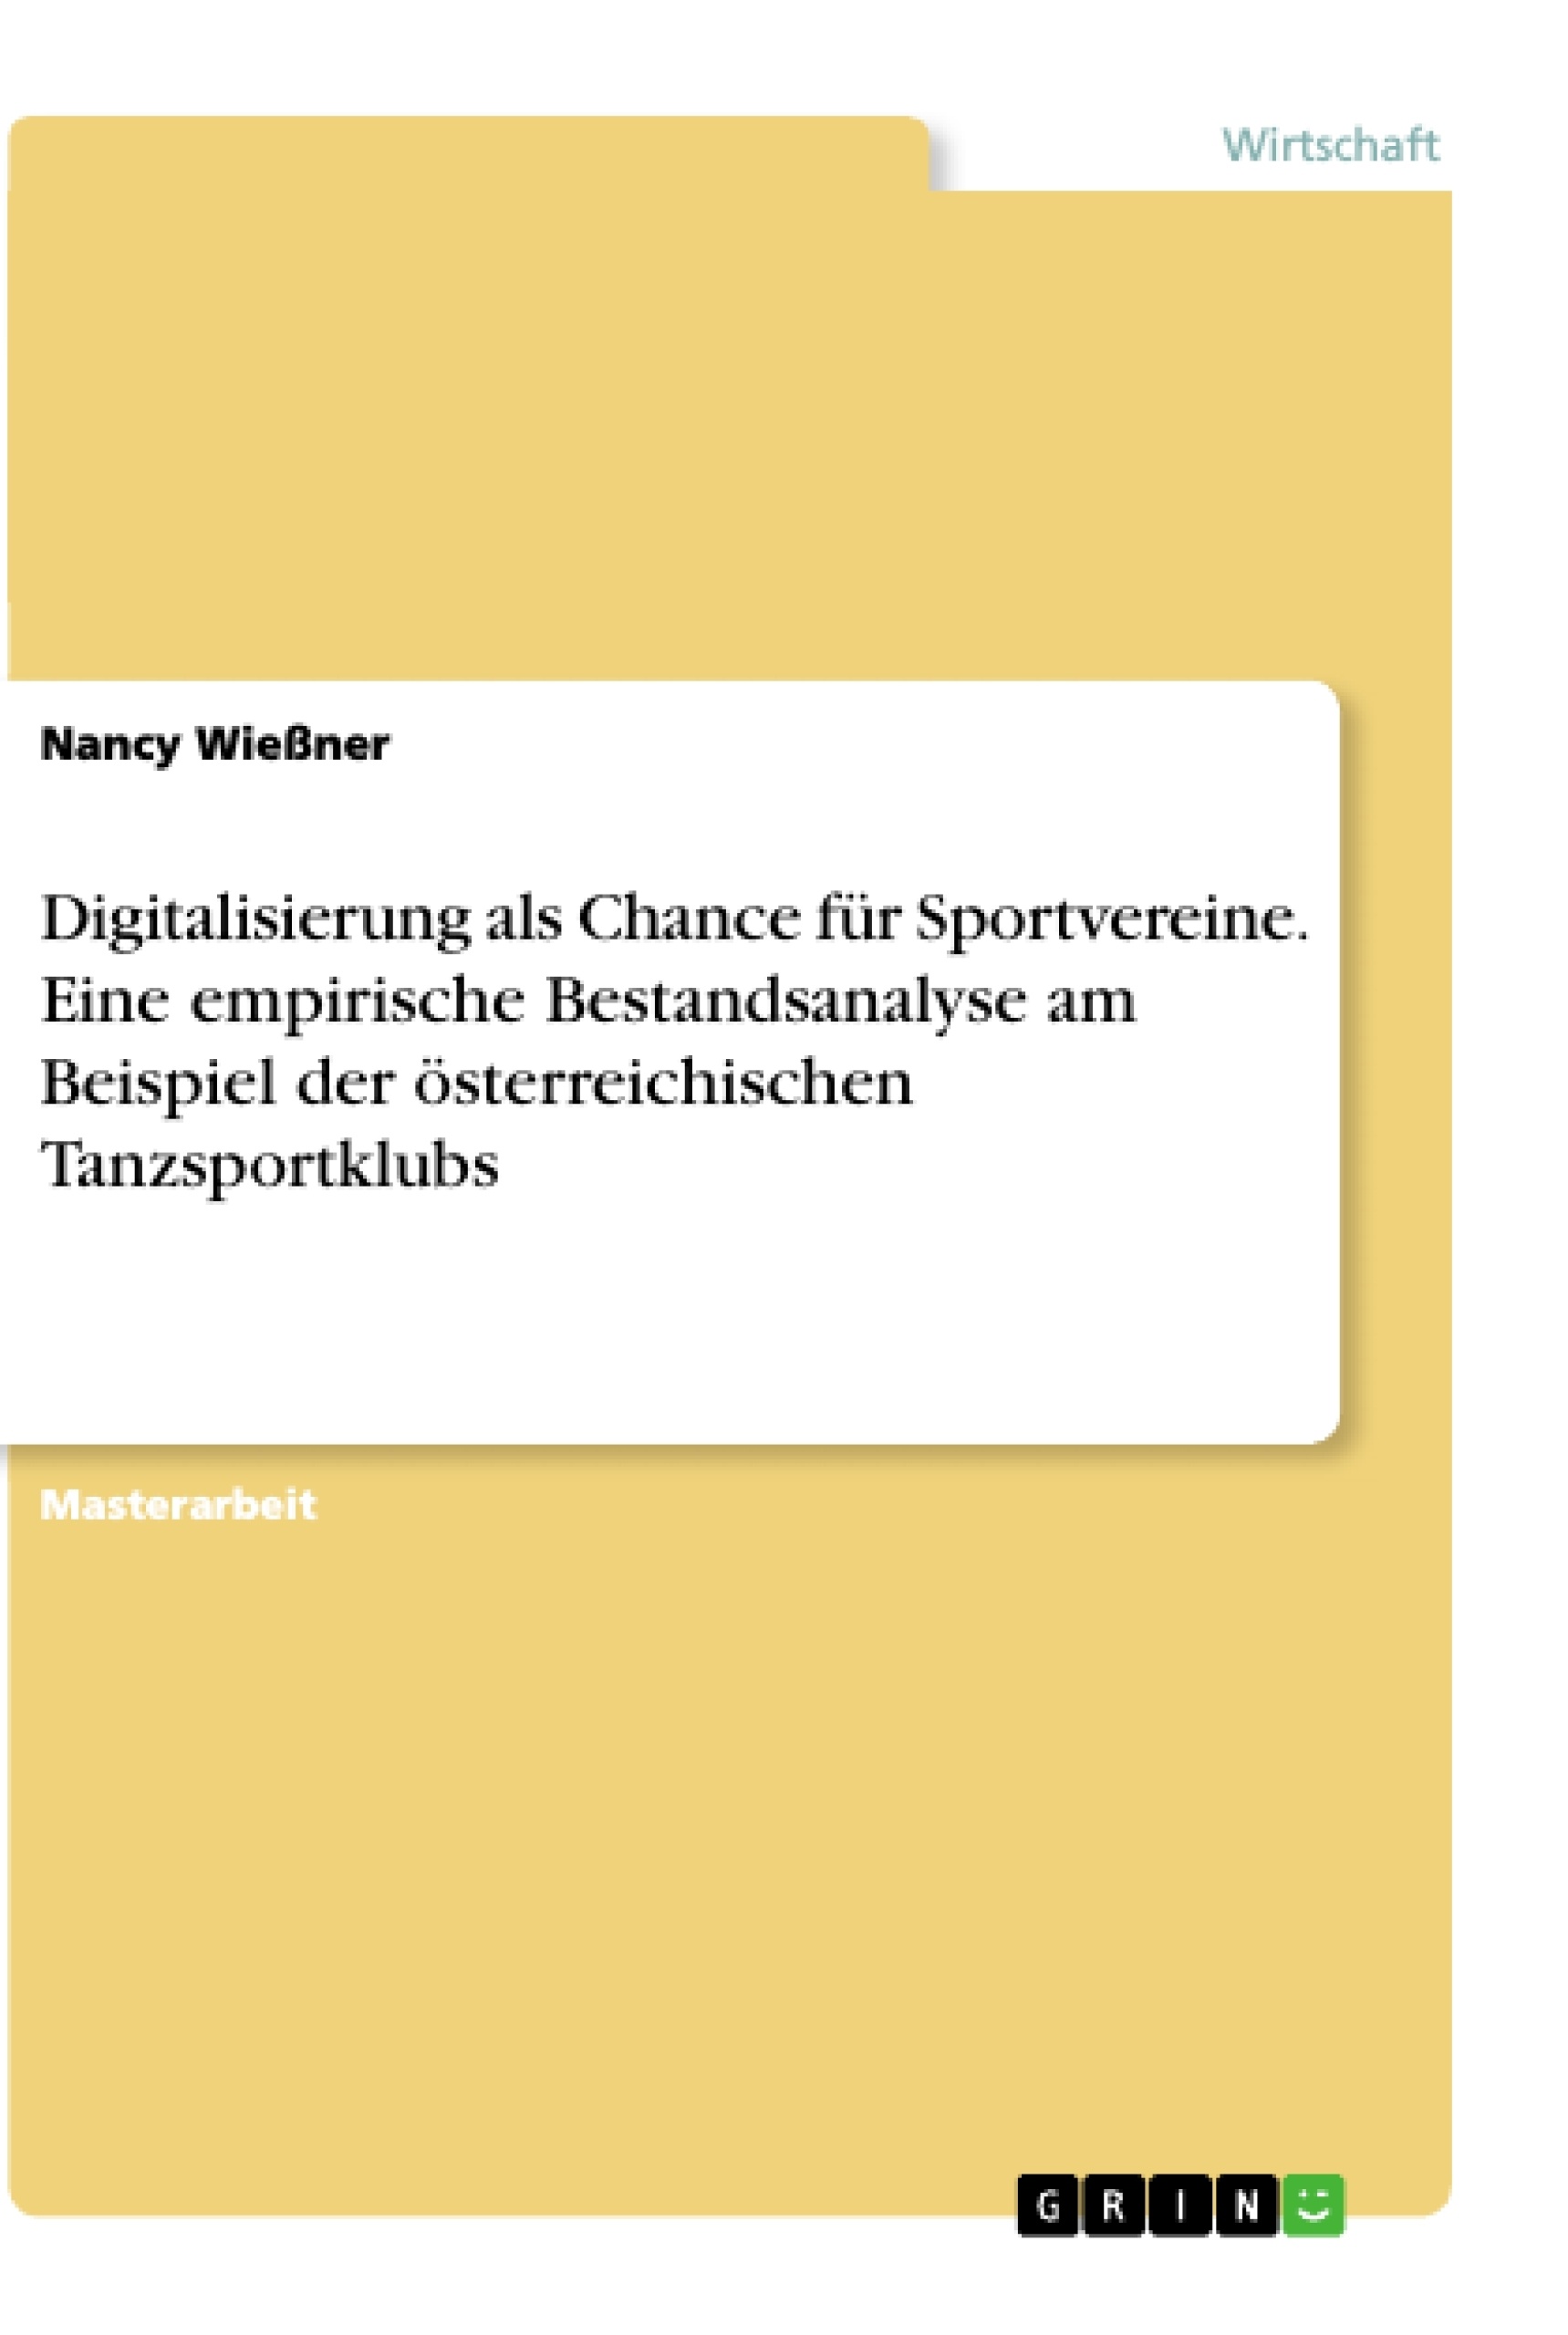 Título: Digitalisierung als Chance für Sportvereine. Eine empirische Bestandsanalyse am Beispiel der österreichischen Tanzsportklubs